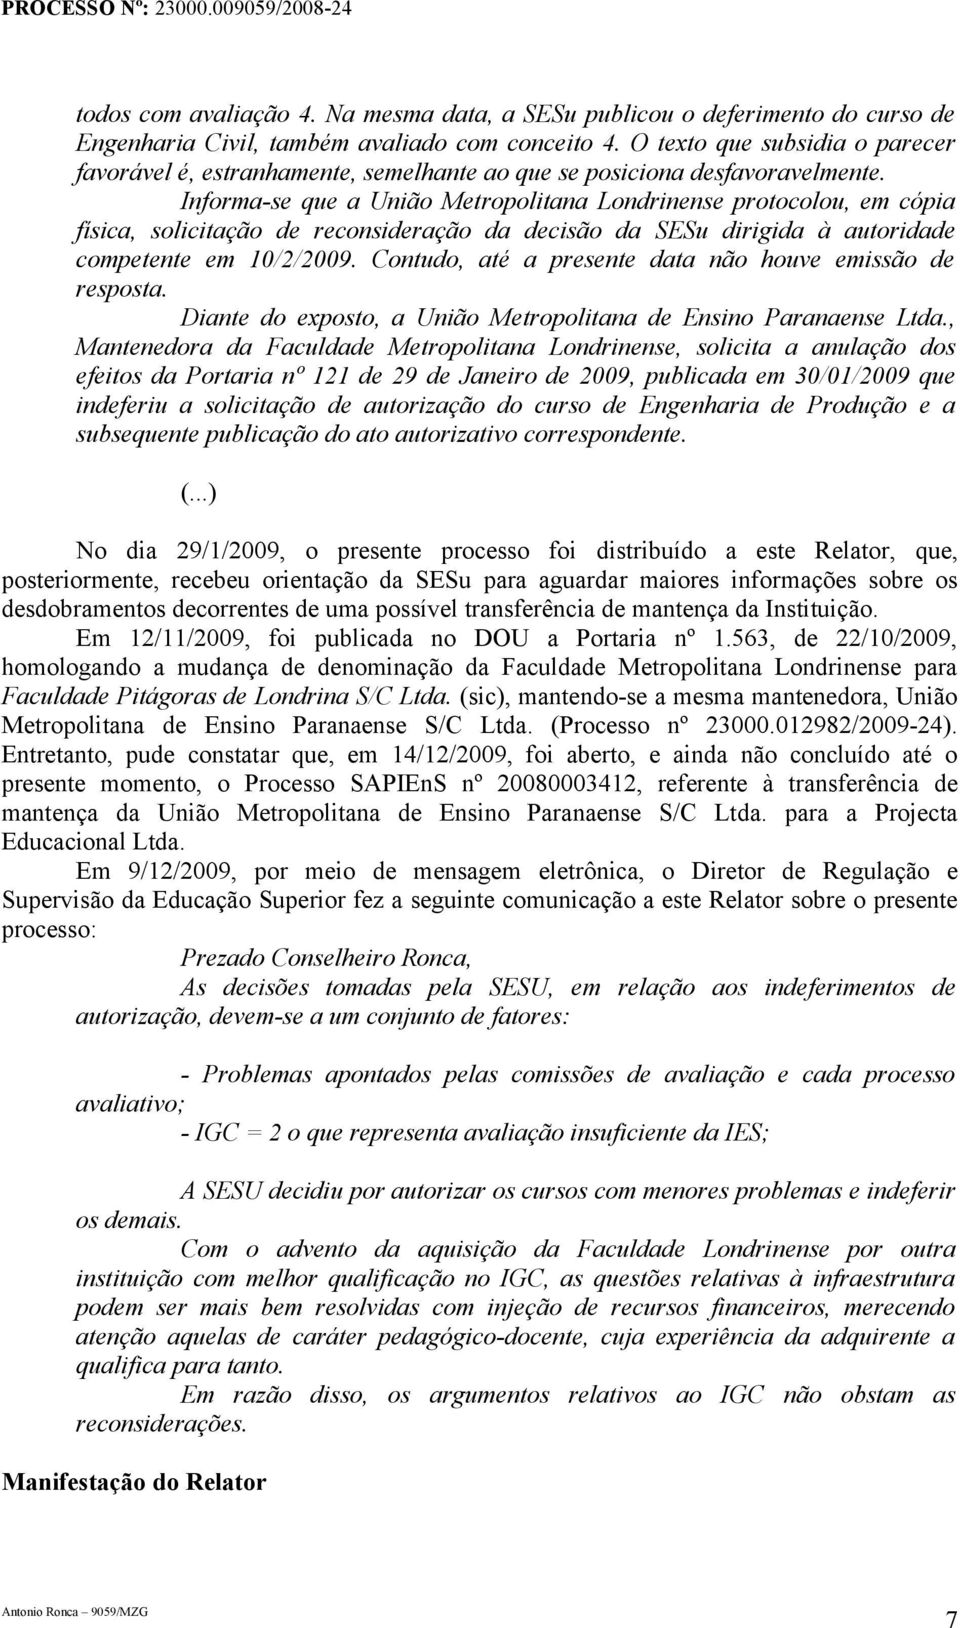 Informa-se que a União Metropolitana Londrinense protocolou, em cópia física, solicitação de reconsideração da decisão da SESu dirigida à autoridade competente em 10/2/2009.